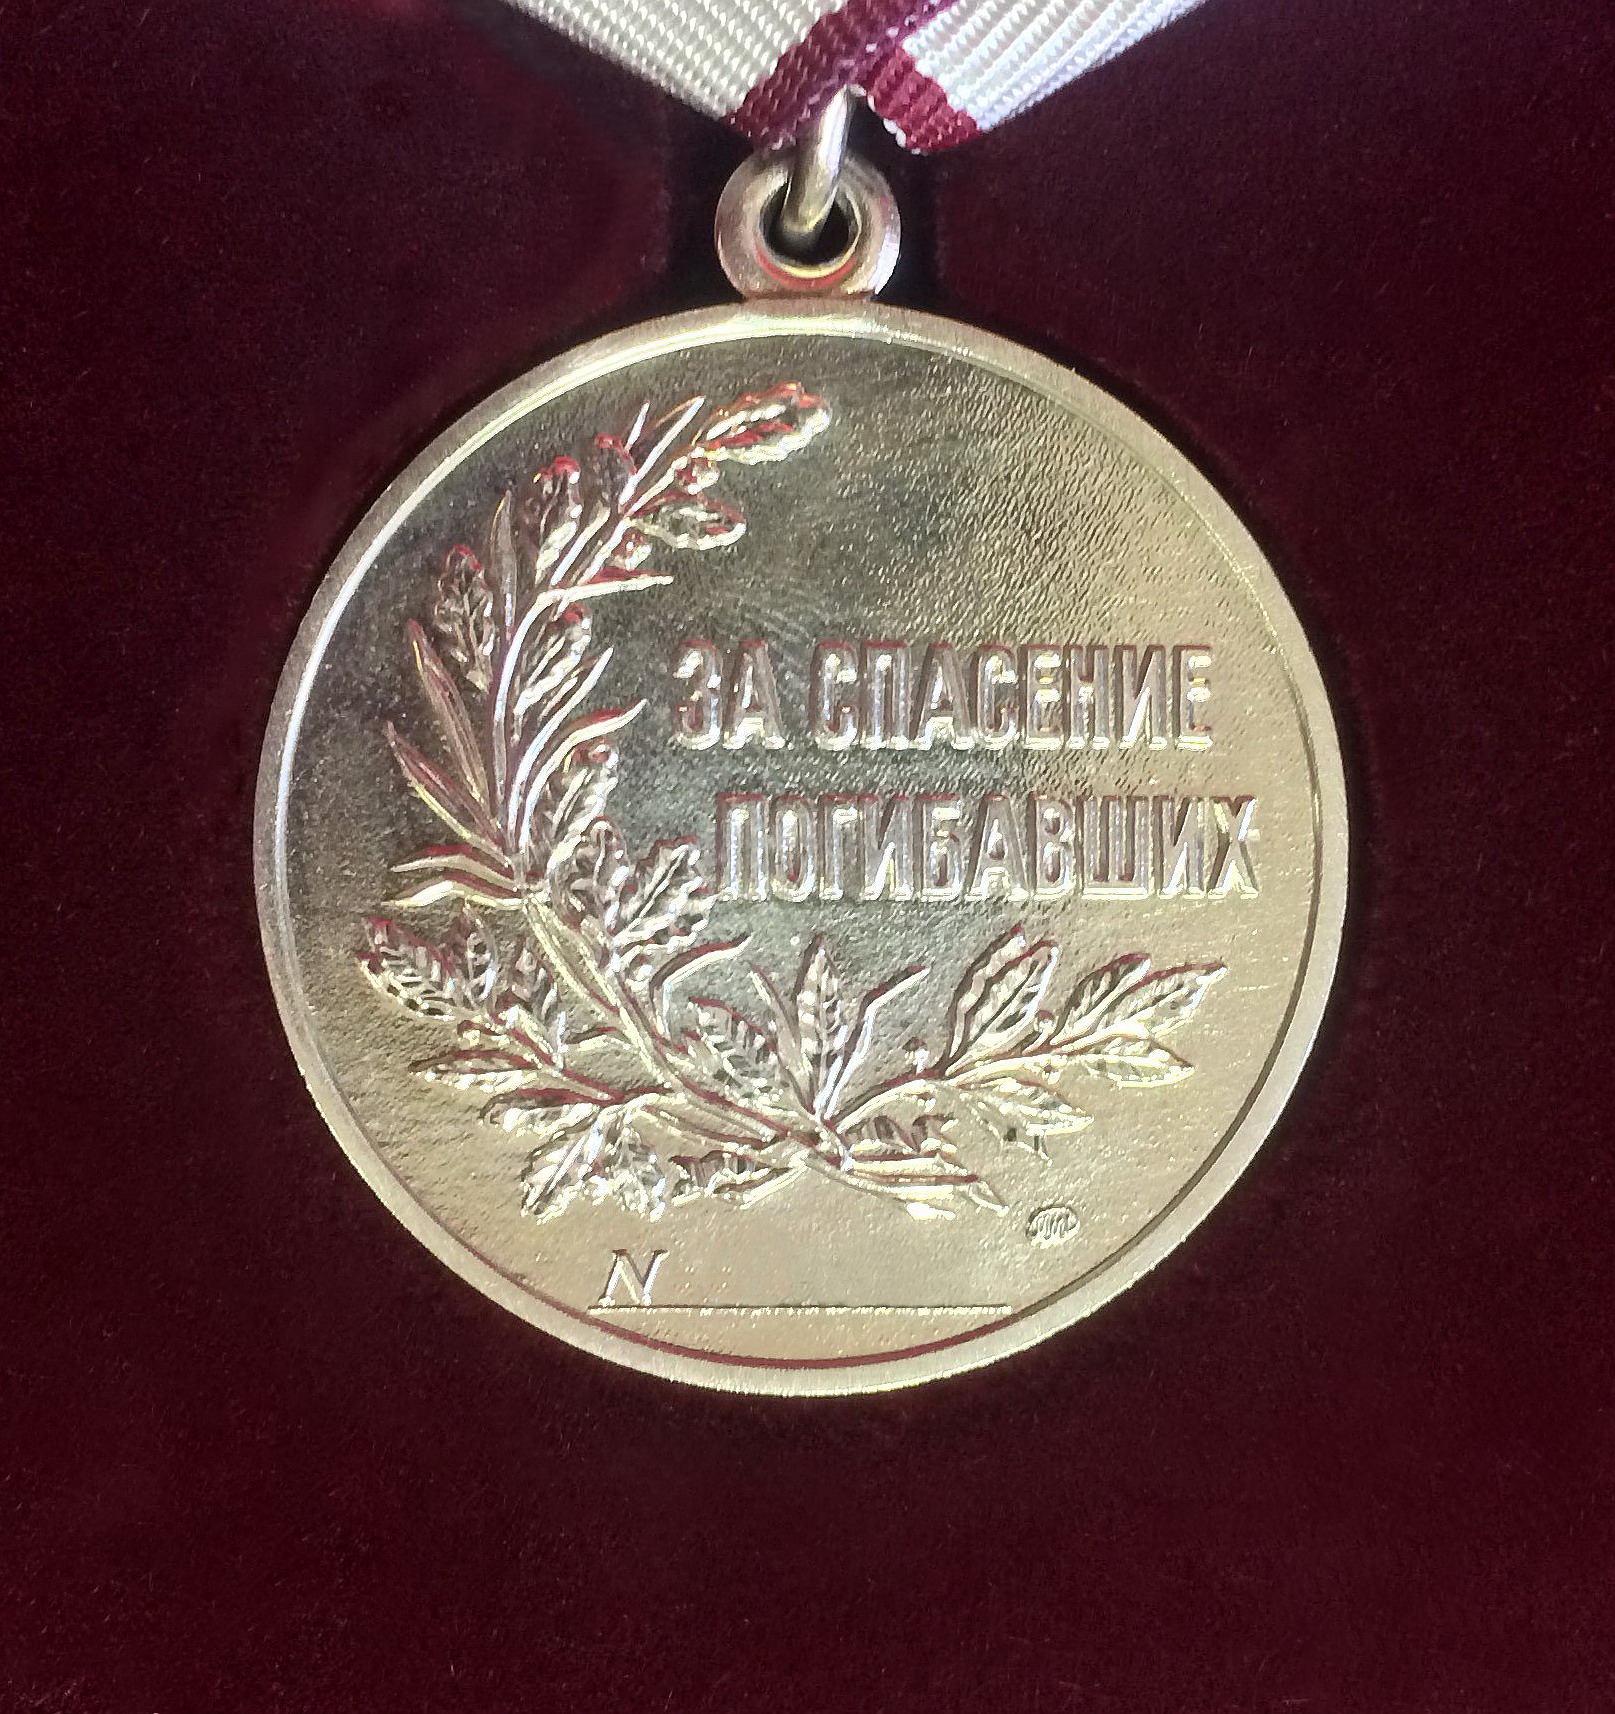 Игорь Руденя выразил слова благодарности награждённым медалью «За спасение погибавших» школьникам из Тверской области